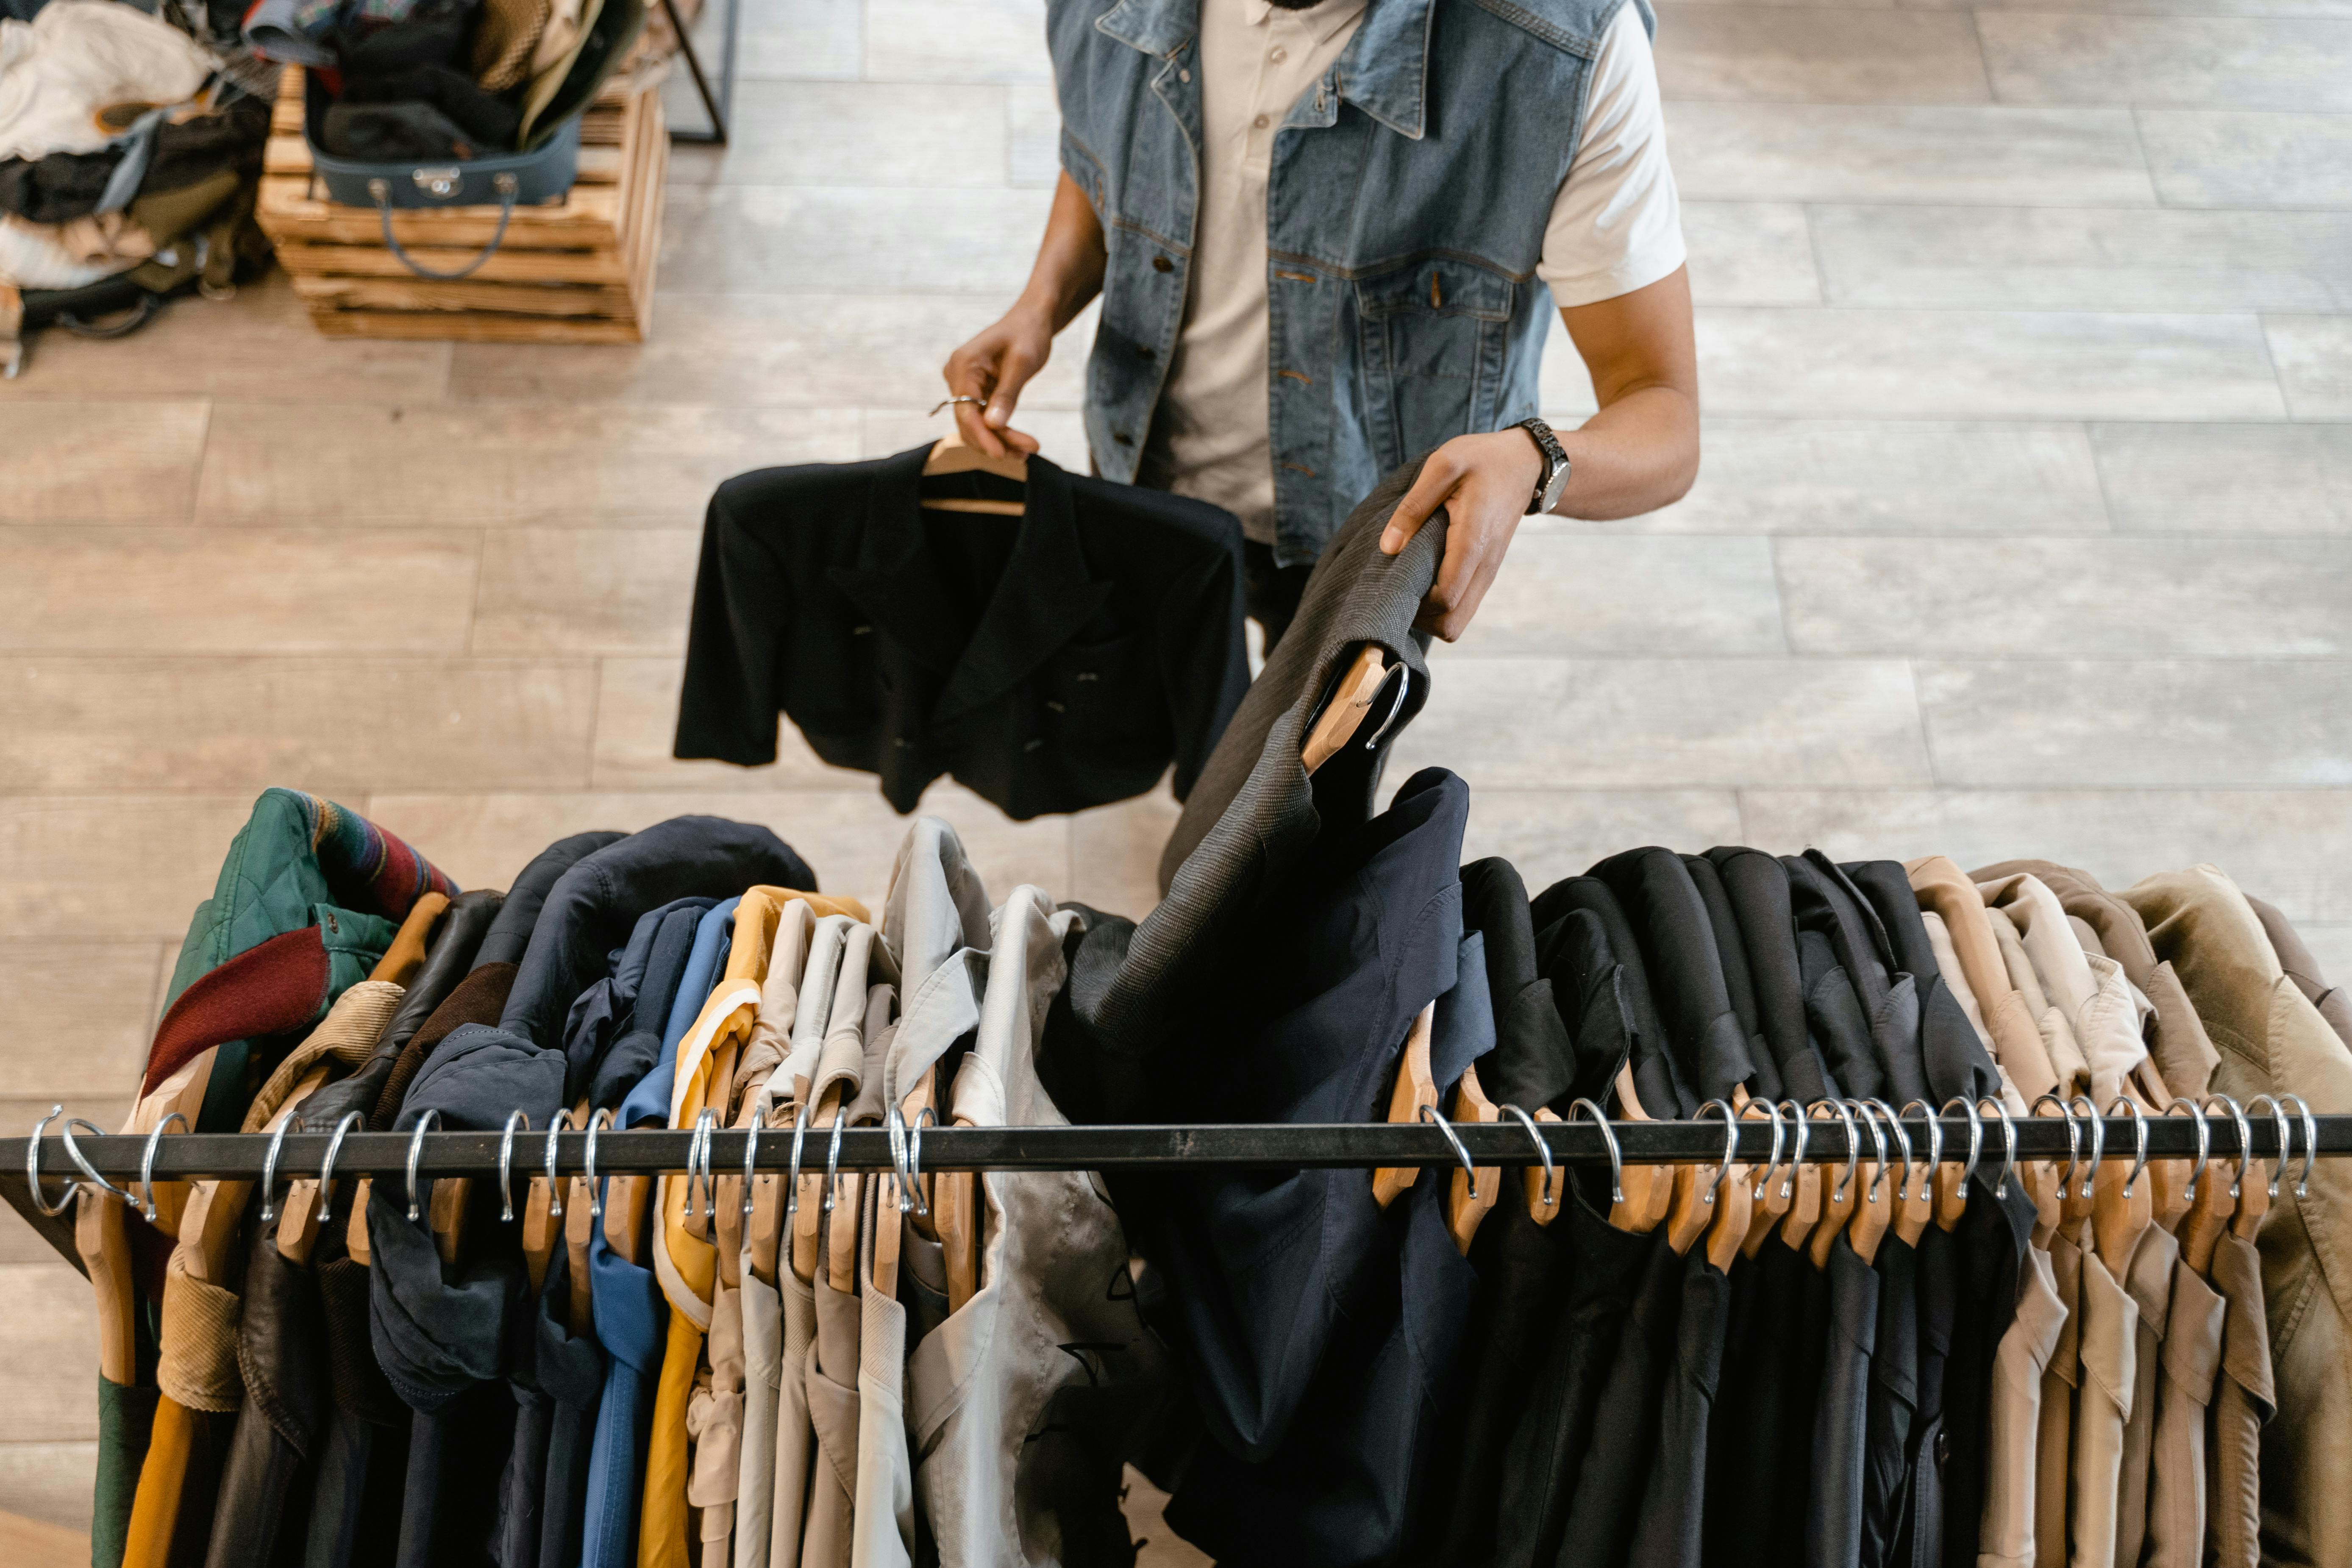 A man selecting clothes | Source: Pexels